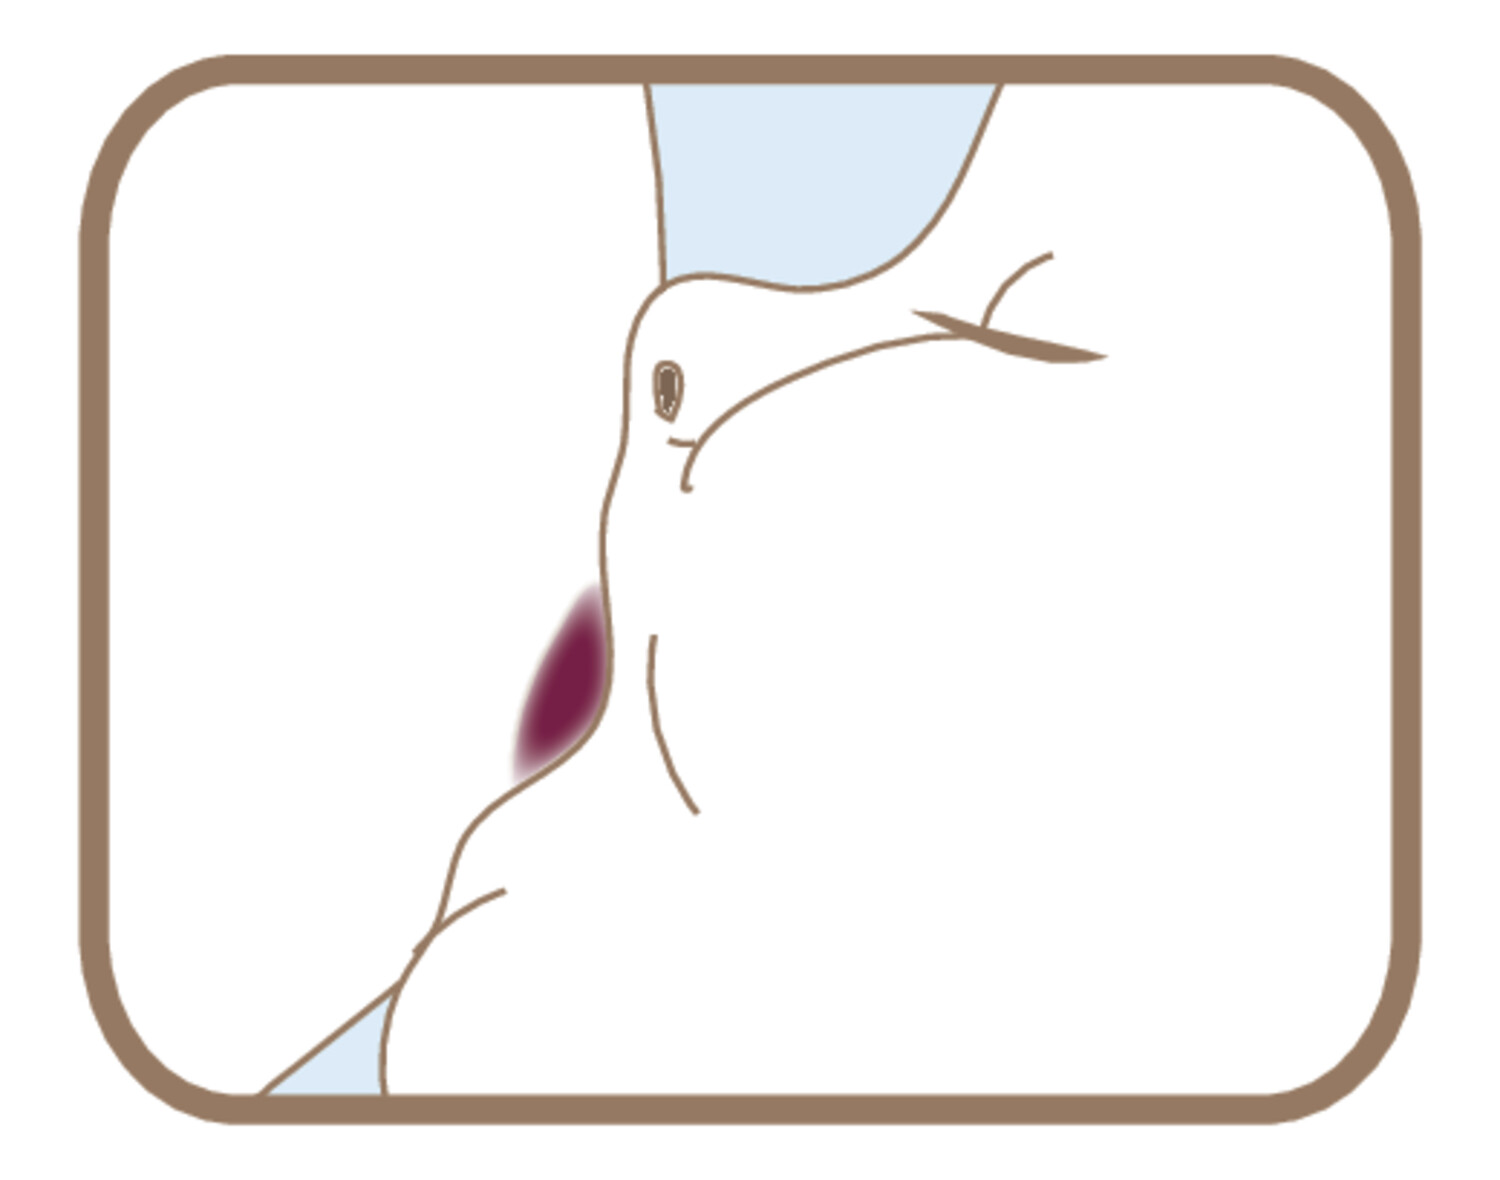 Informer et guider les femmes dans leur projet d’allaitement - Figure 3